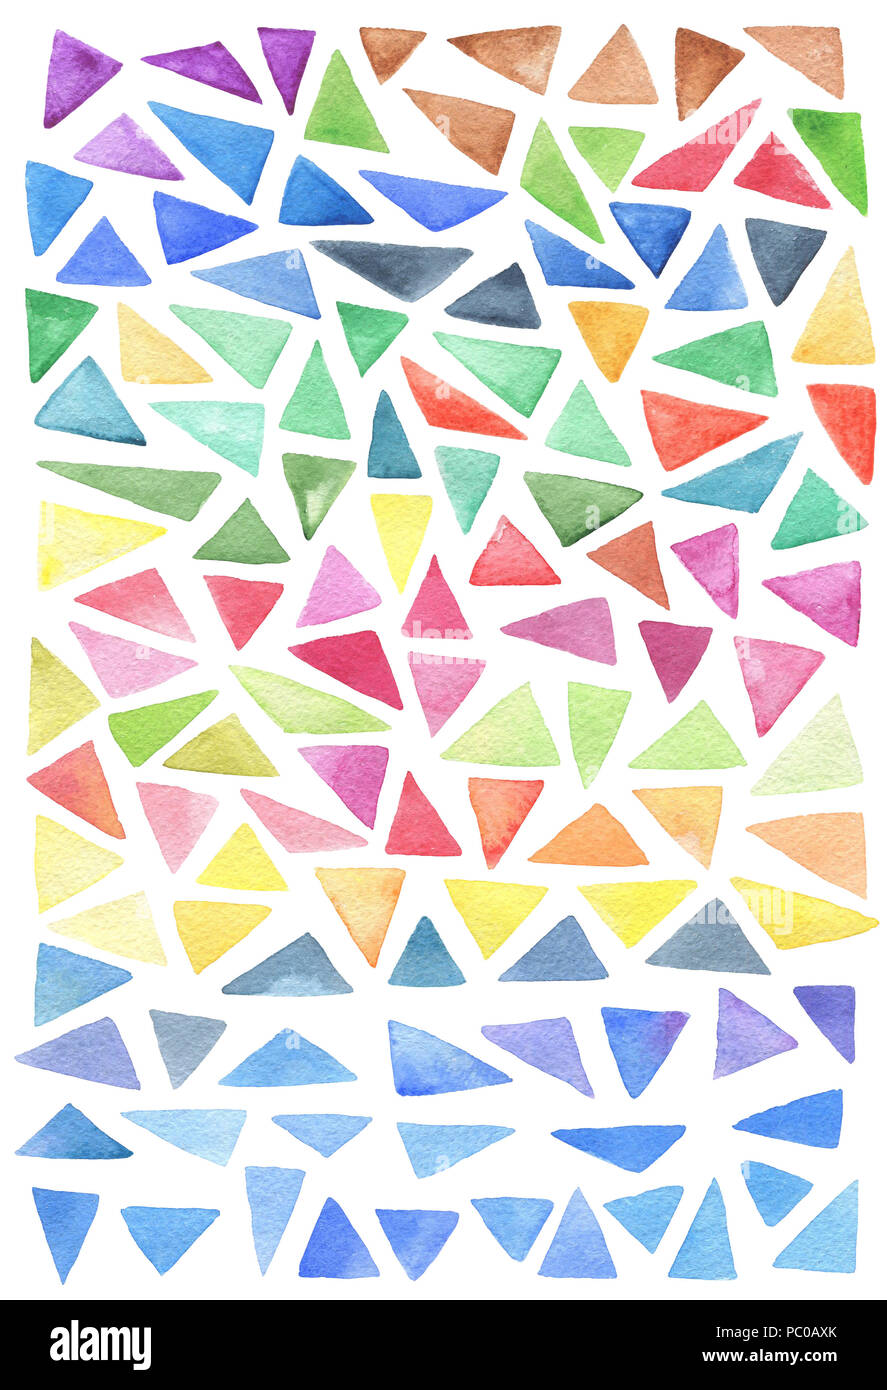 Satz von hellen Aquarell Dreiecke auf einem weißen Hintergrund. Hand abstract dekorative Elemente dargestellt. Stockfoto